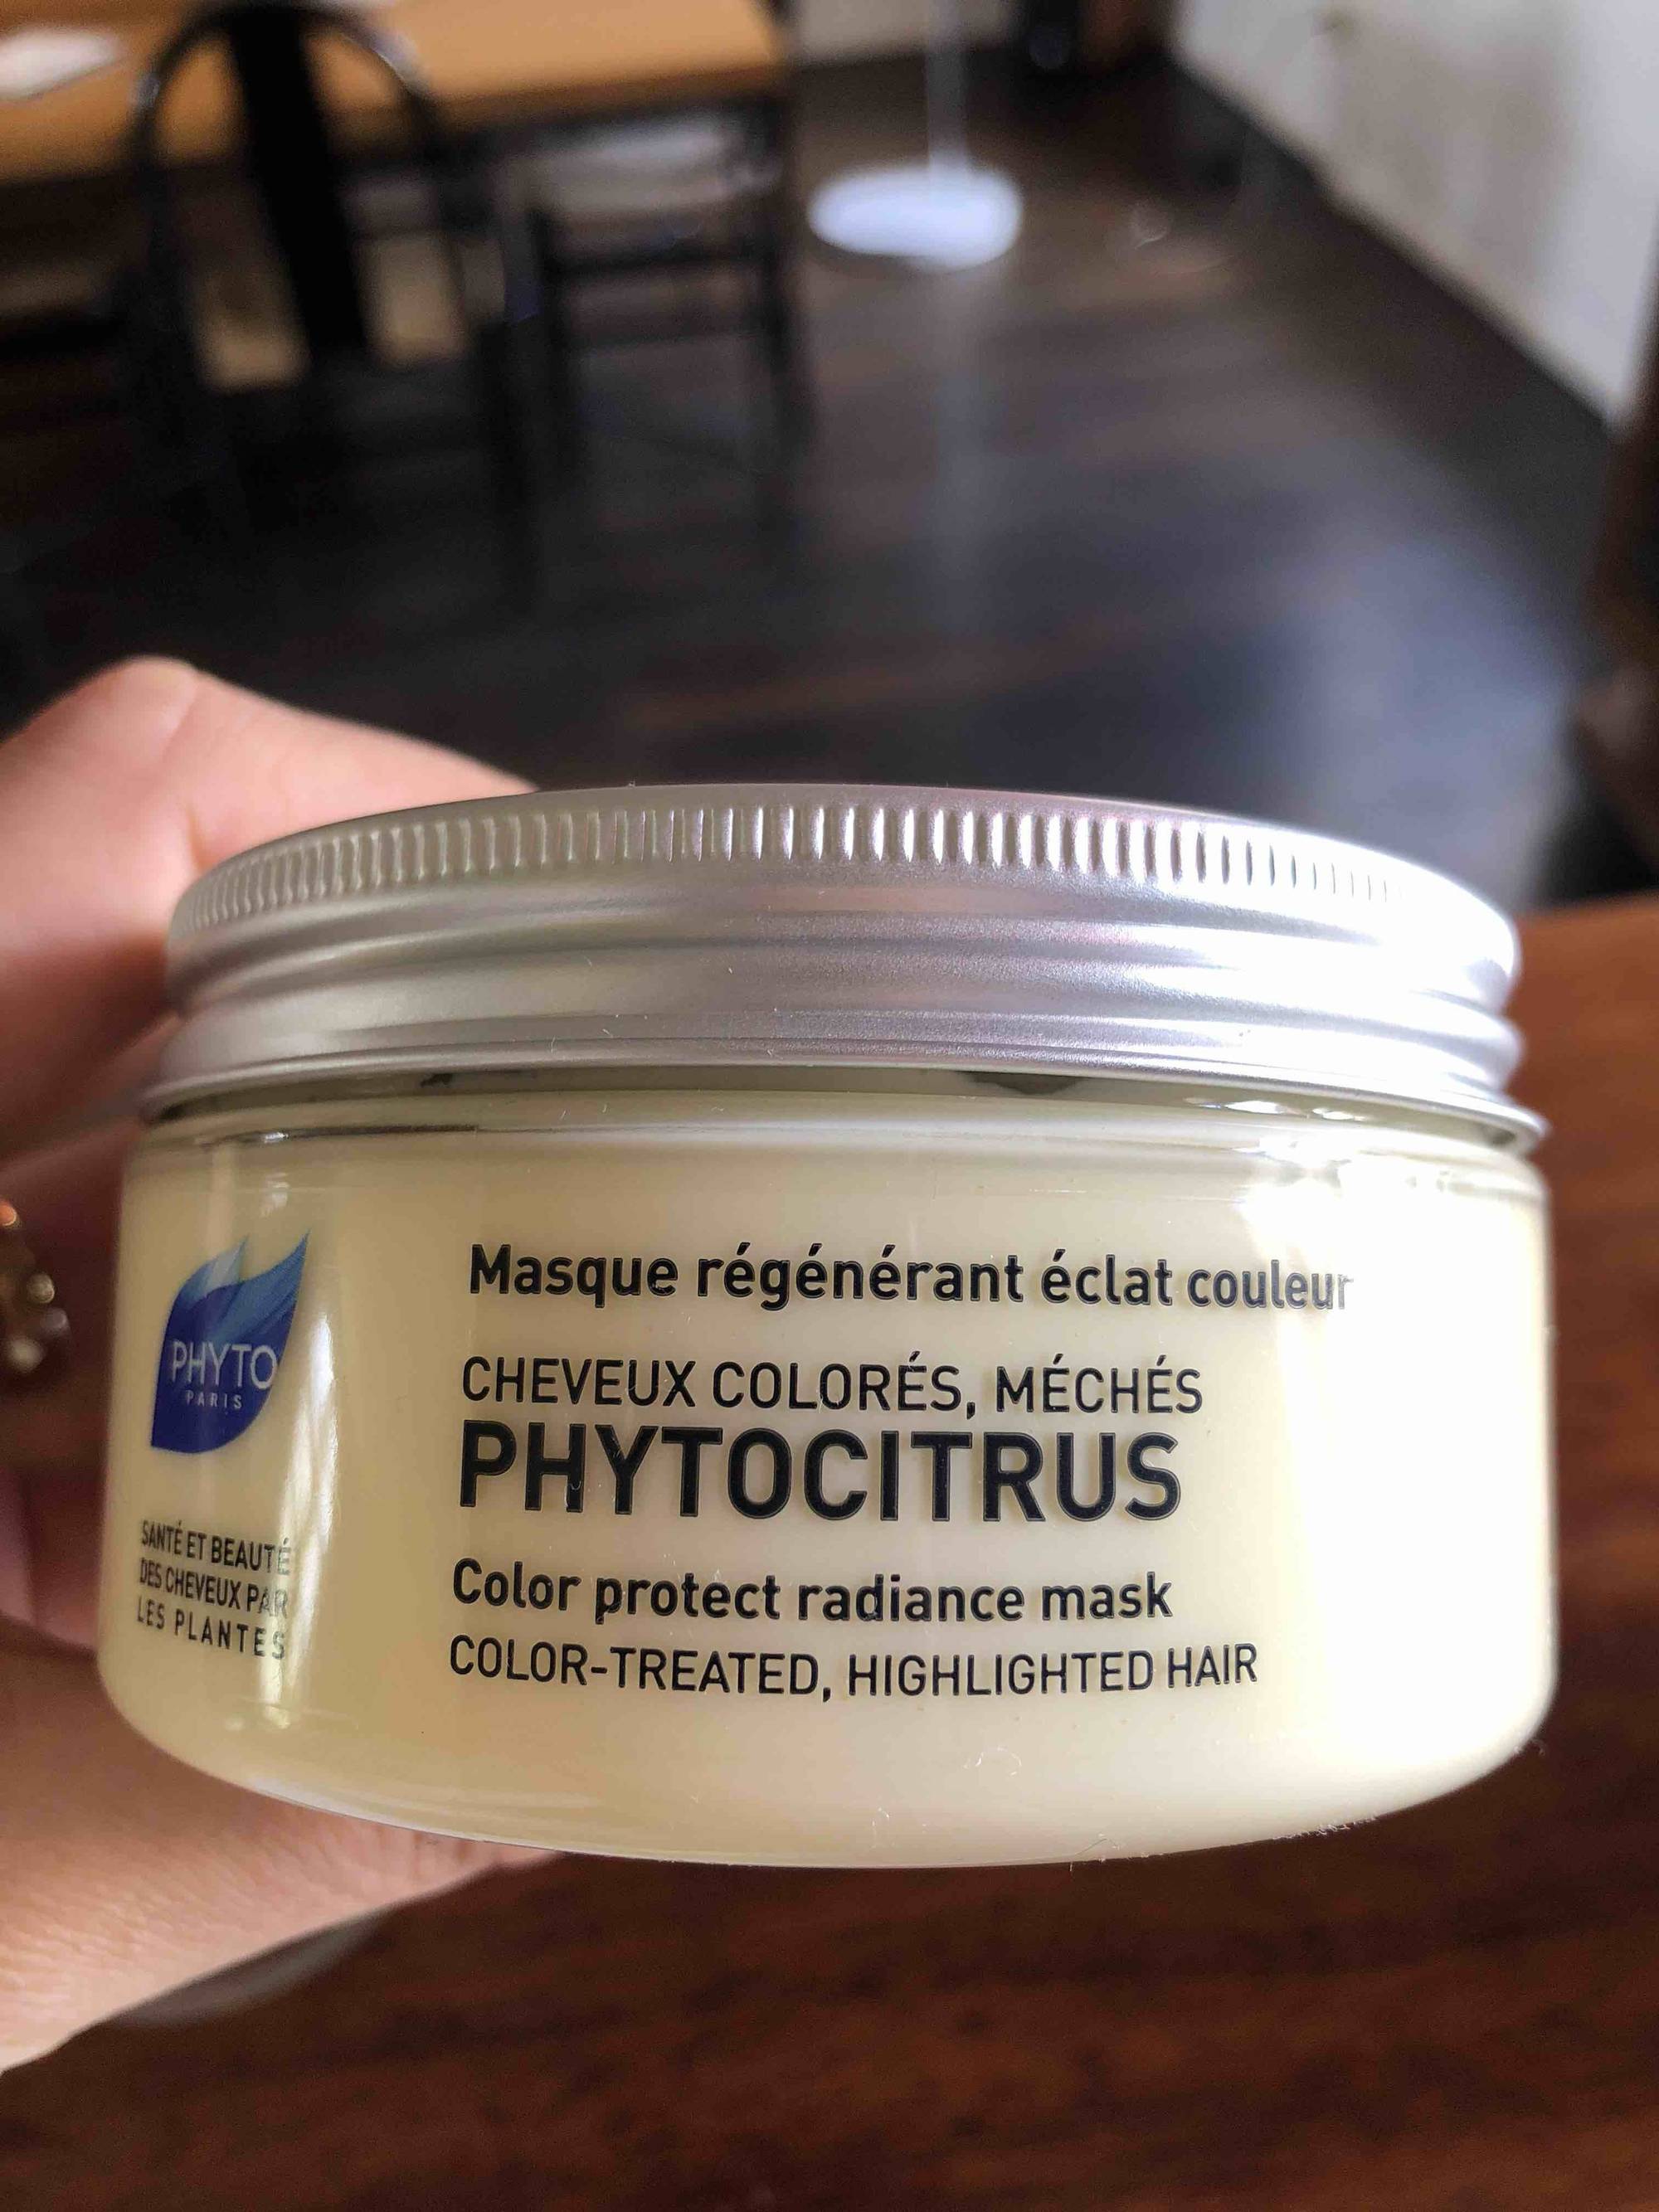 PHYTO - Phytocitrus - Masque régénérant éclat couleur